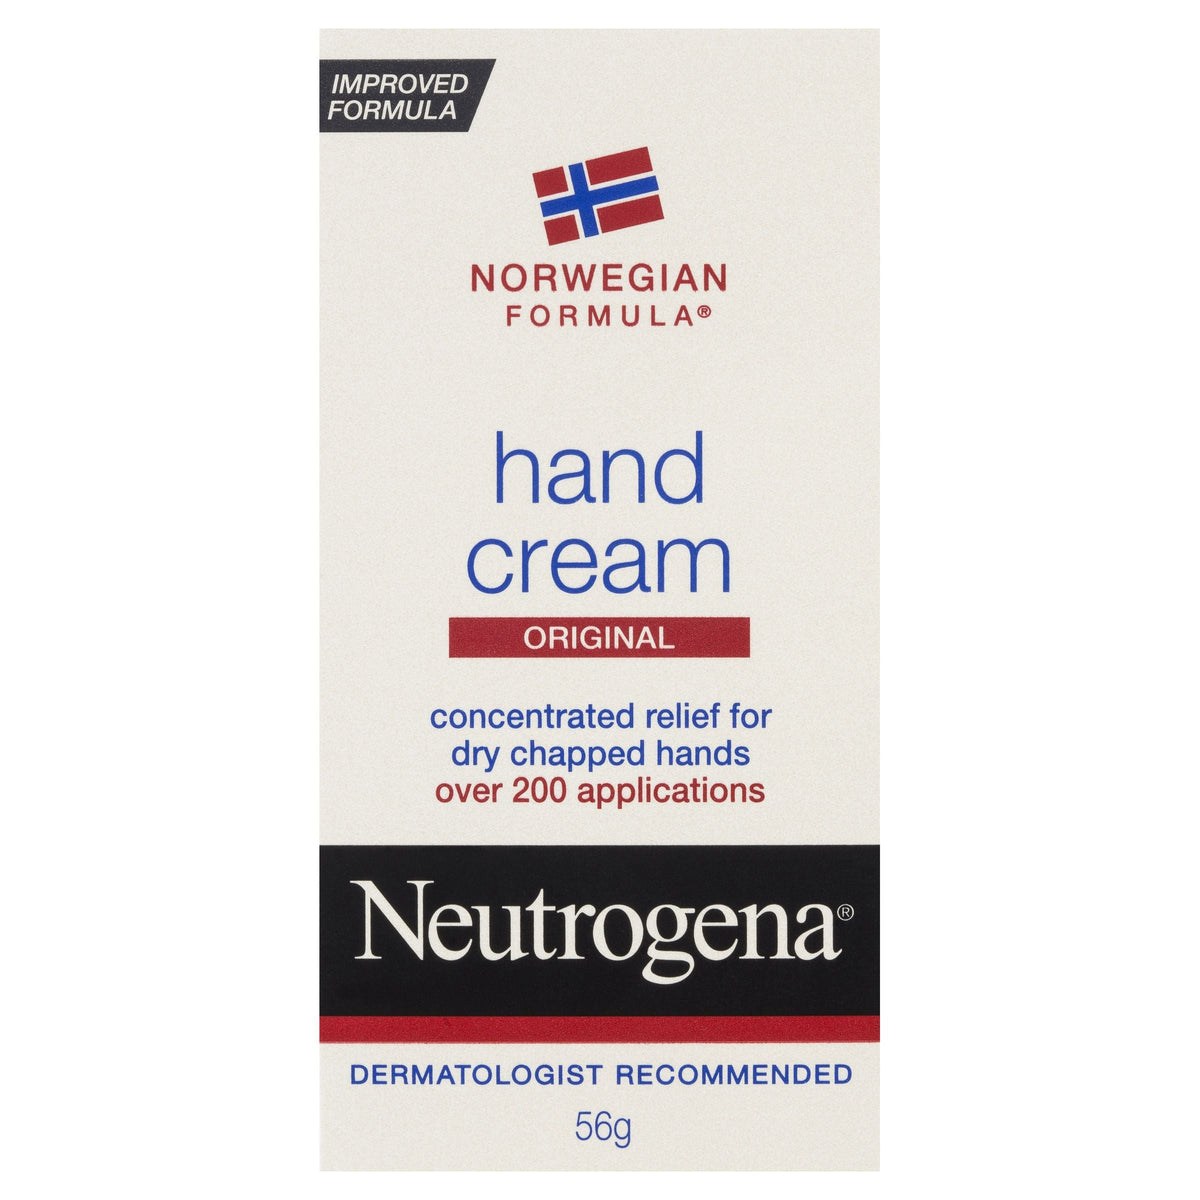 Neutrogena Norwegian Formula Hand Cream 56G